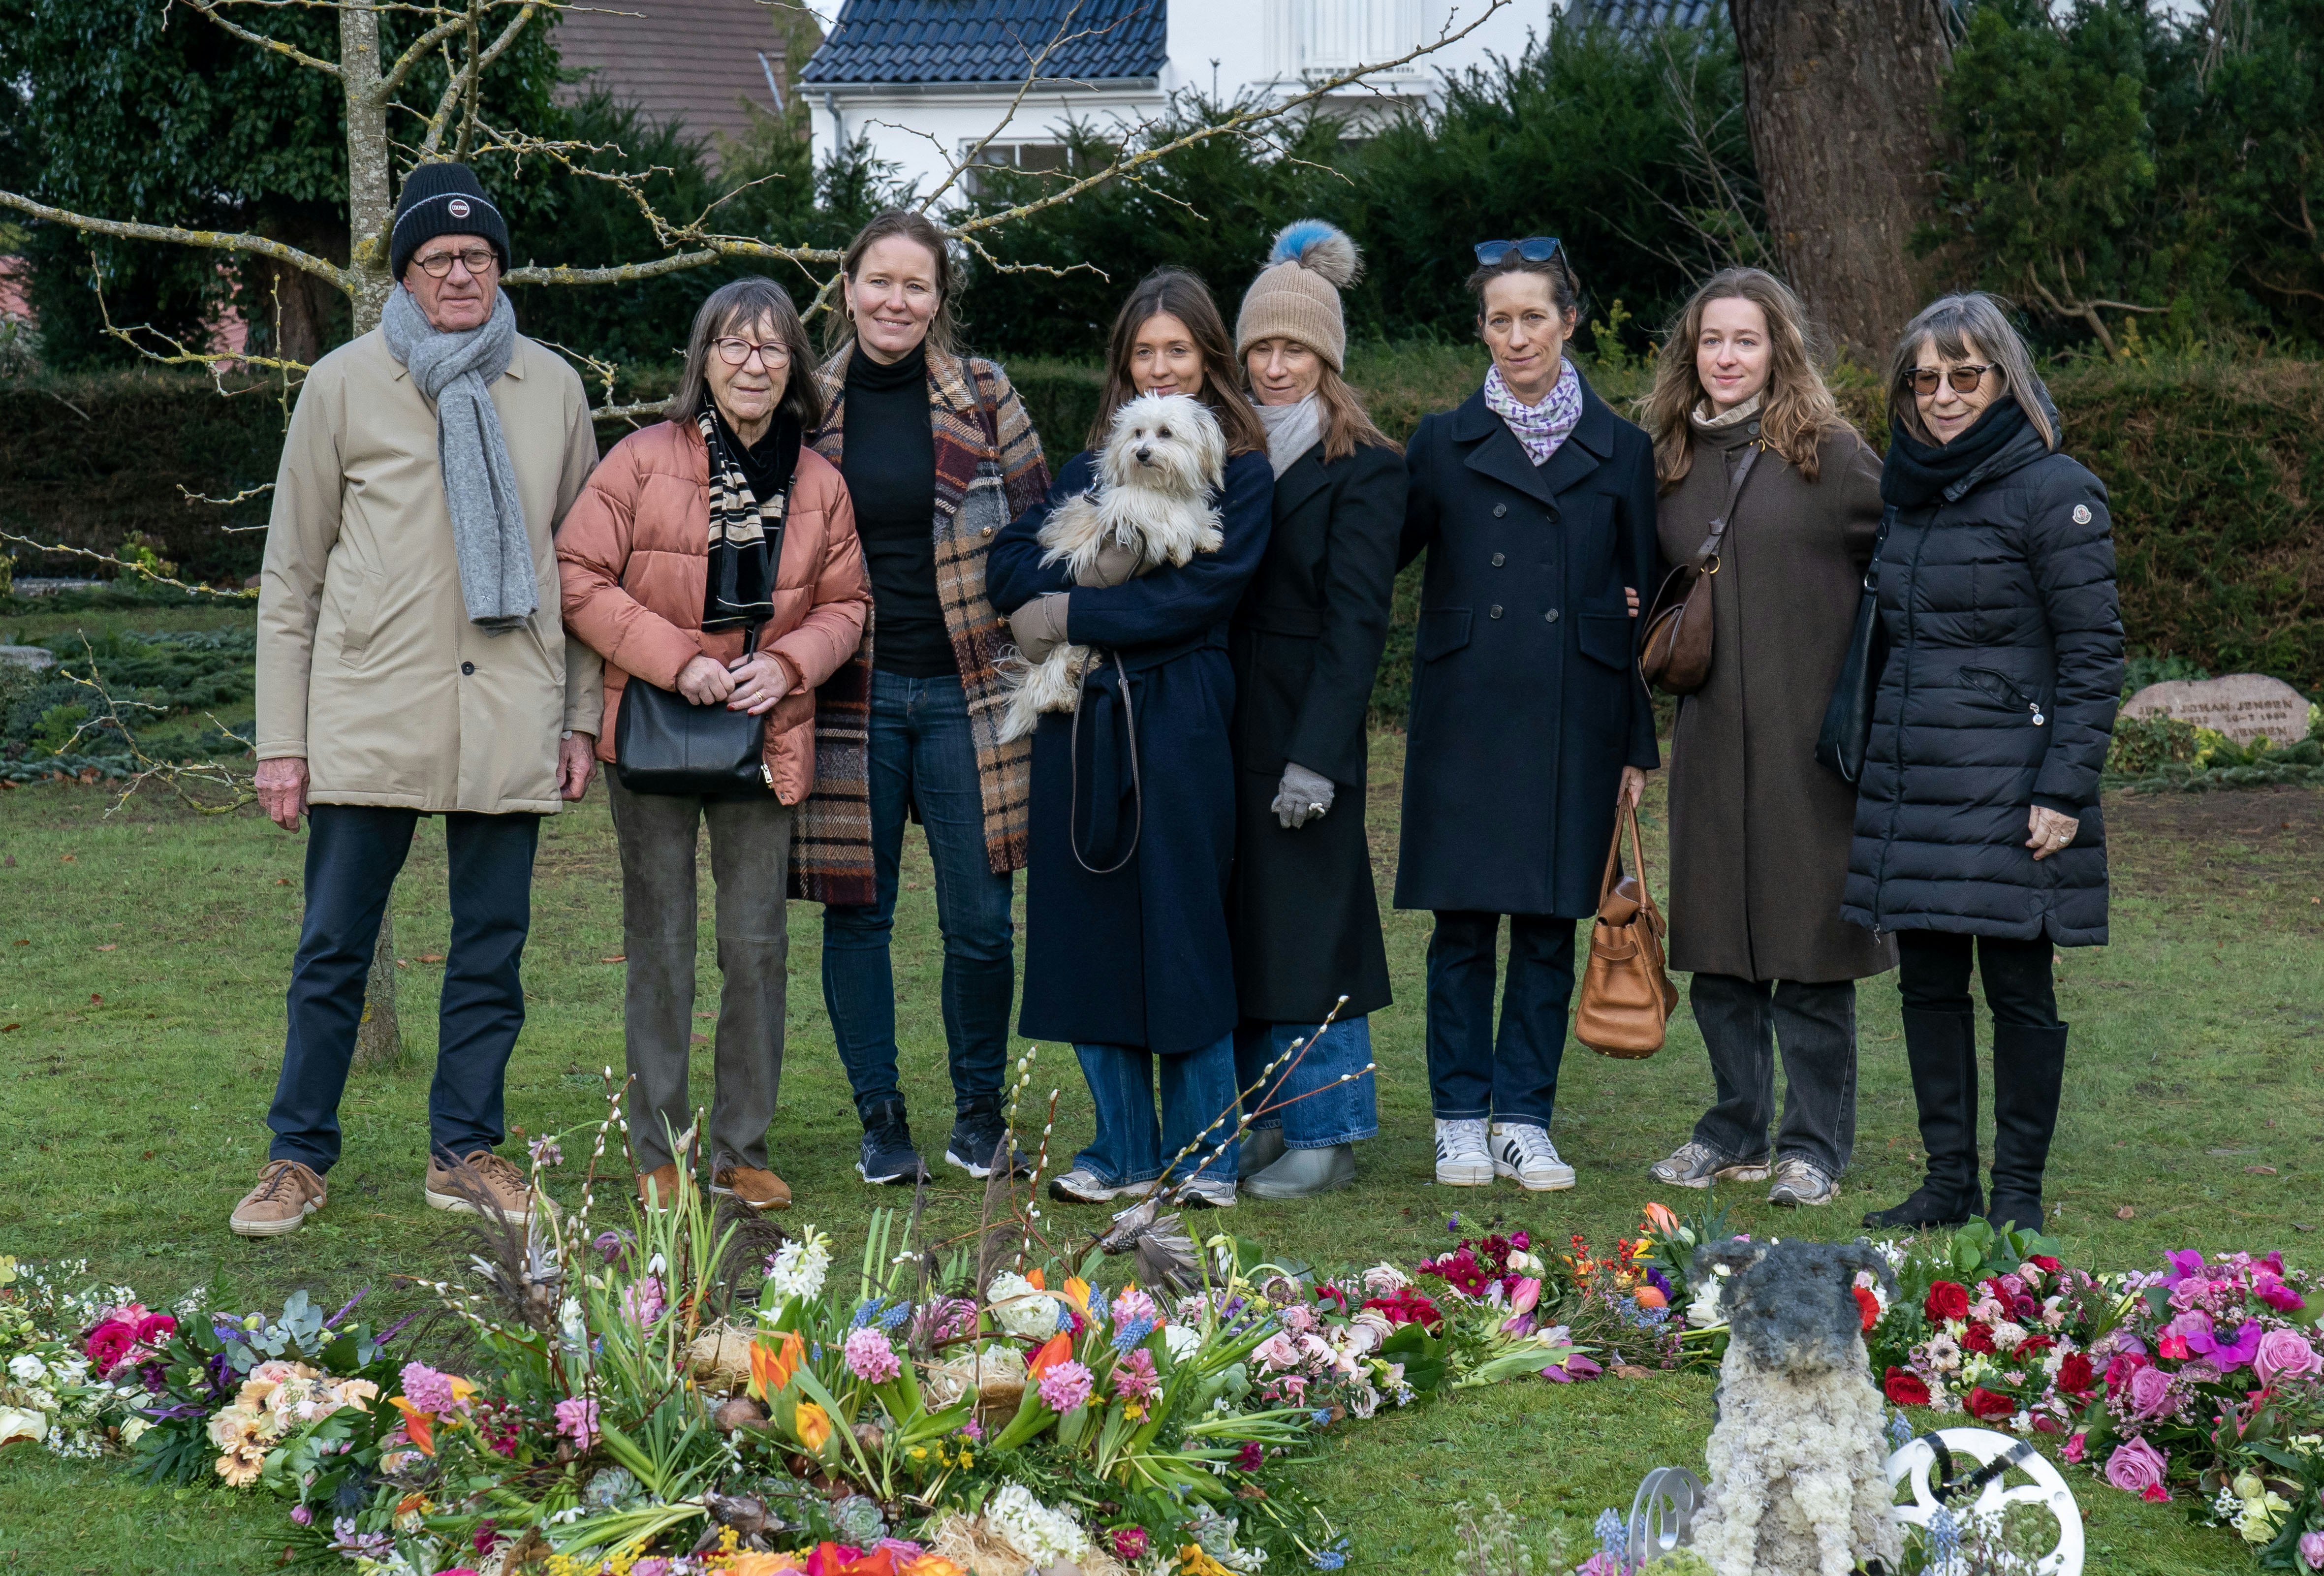 Det er ikke længe siden, familien sagde farvel til Lise Nørgaard. Fra venstre: svigersønnen Per, datteren Anne, barnebarnet Barbara, oldebarnet Amalie, barnebarnet Camilla, barnebarnet  Nanna, oldebarnet Sara og datteren Bente.